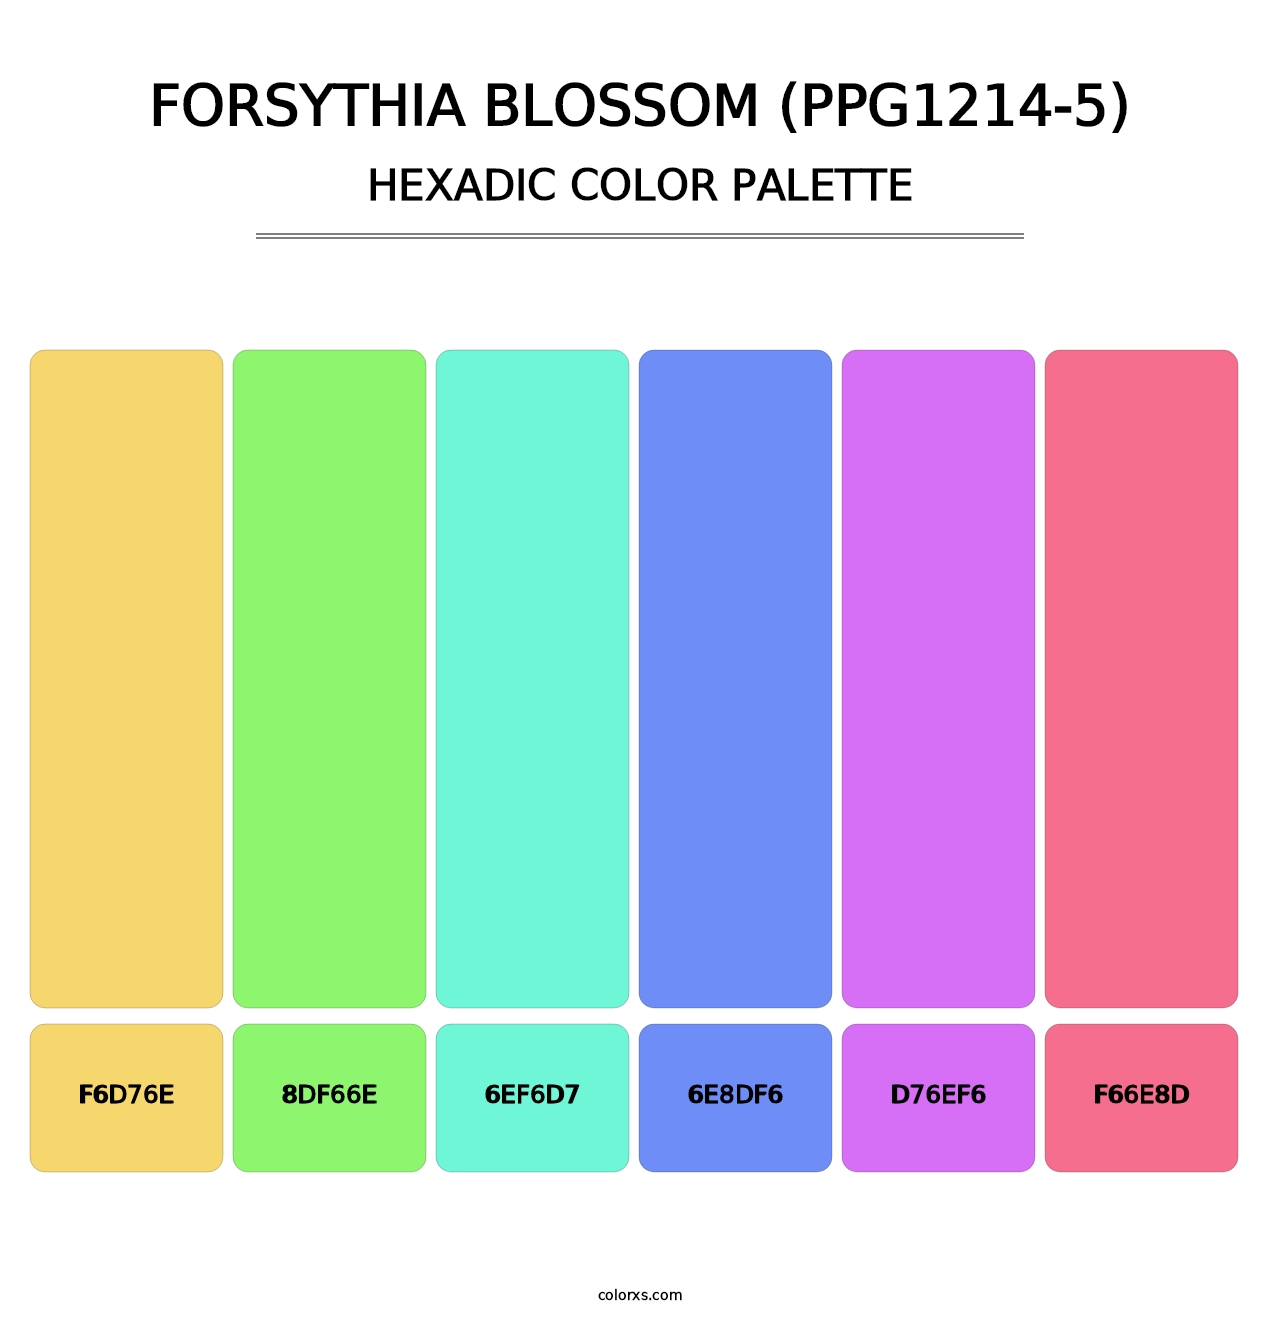 Forsythia Blossom (PPG1214-5) - Hexadic Color Palette